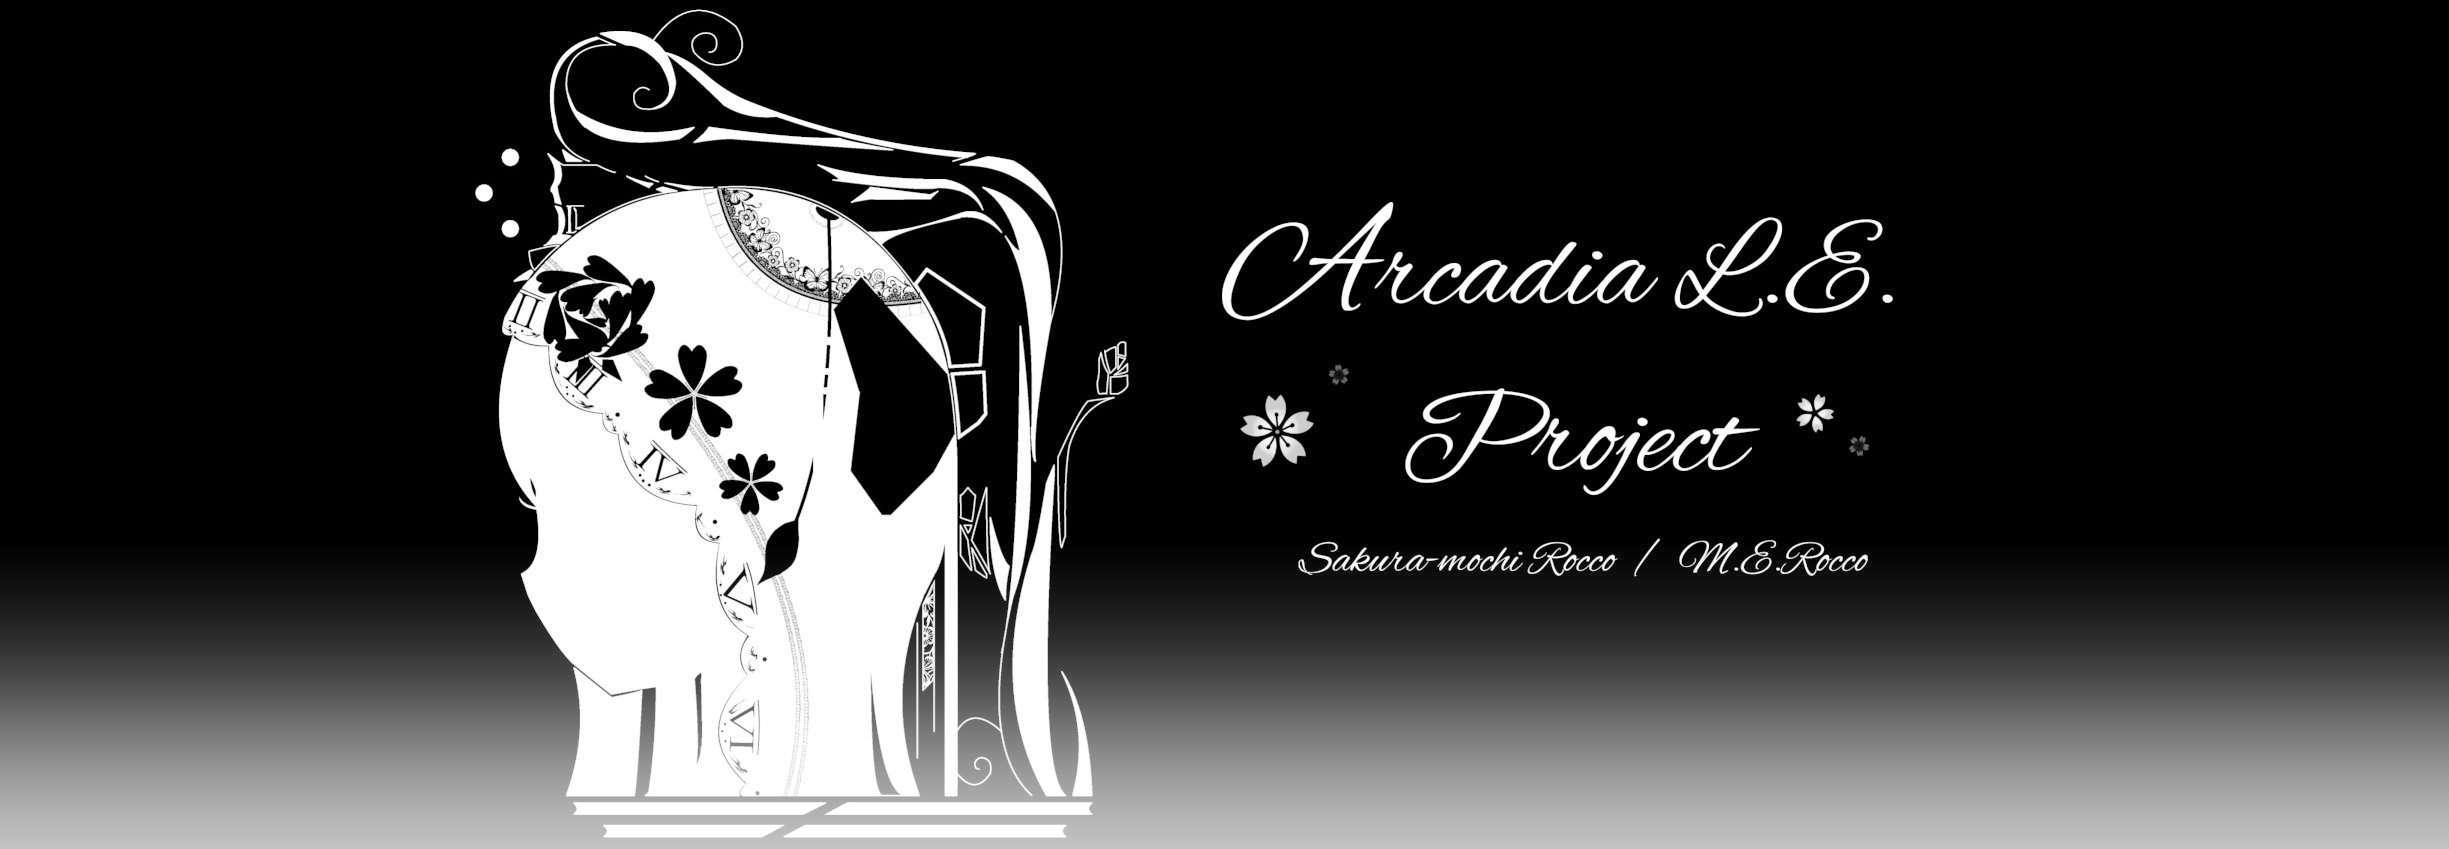 Arcadia L.E. Project